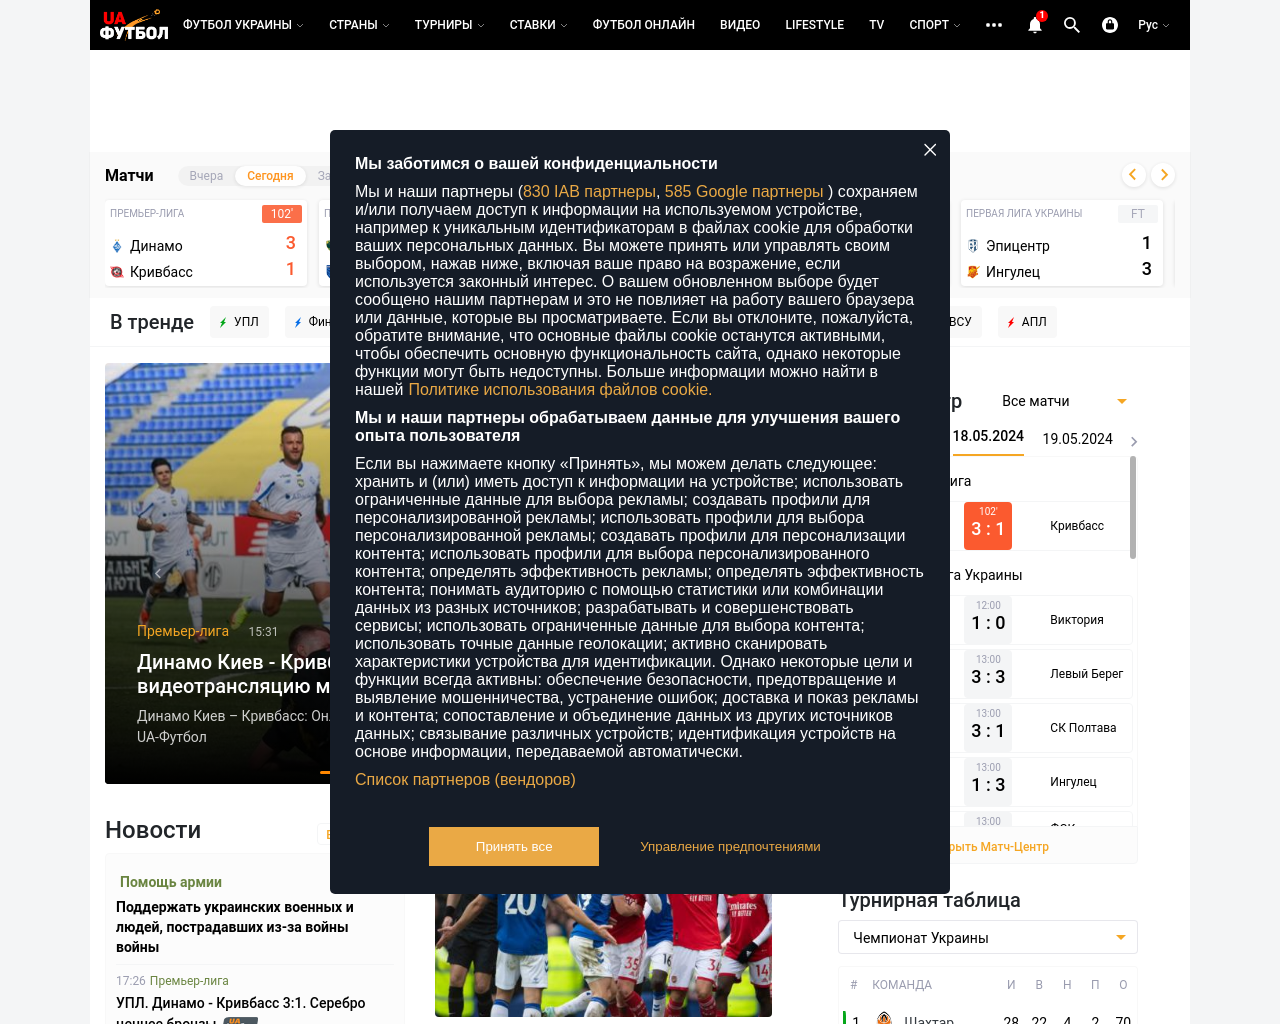 ua-football.com